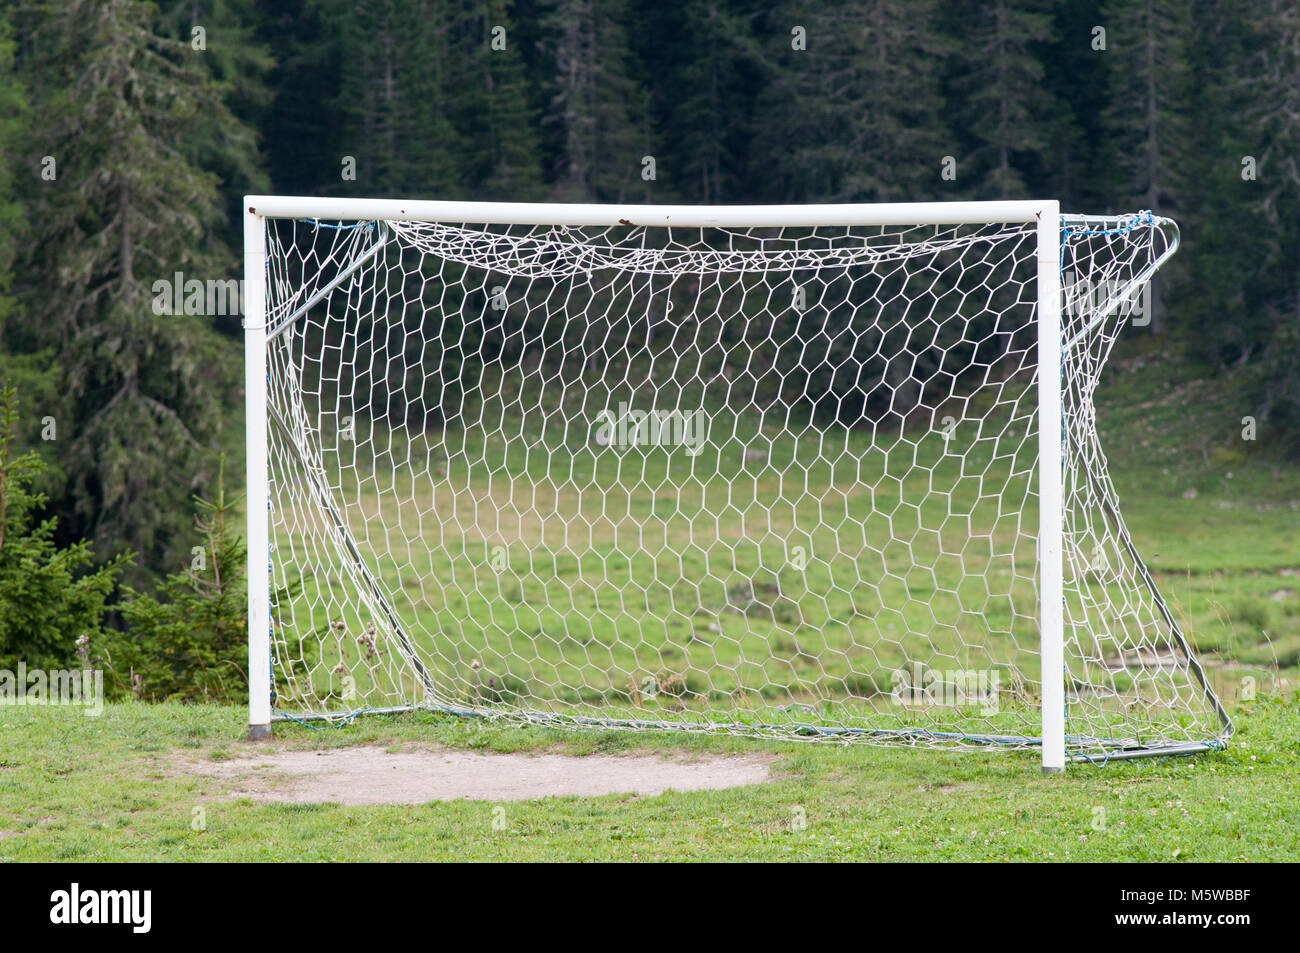 football net for soccer sport Stock Photo